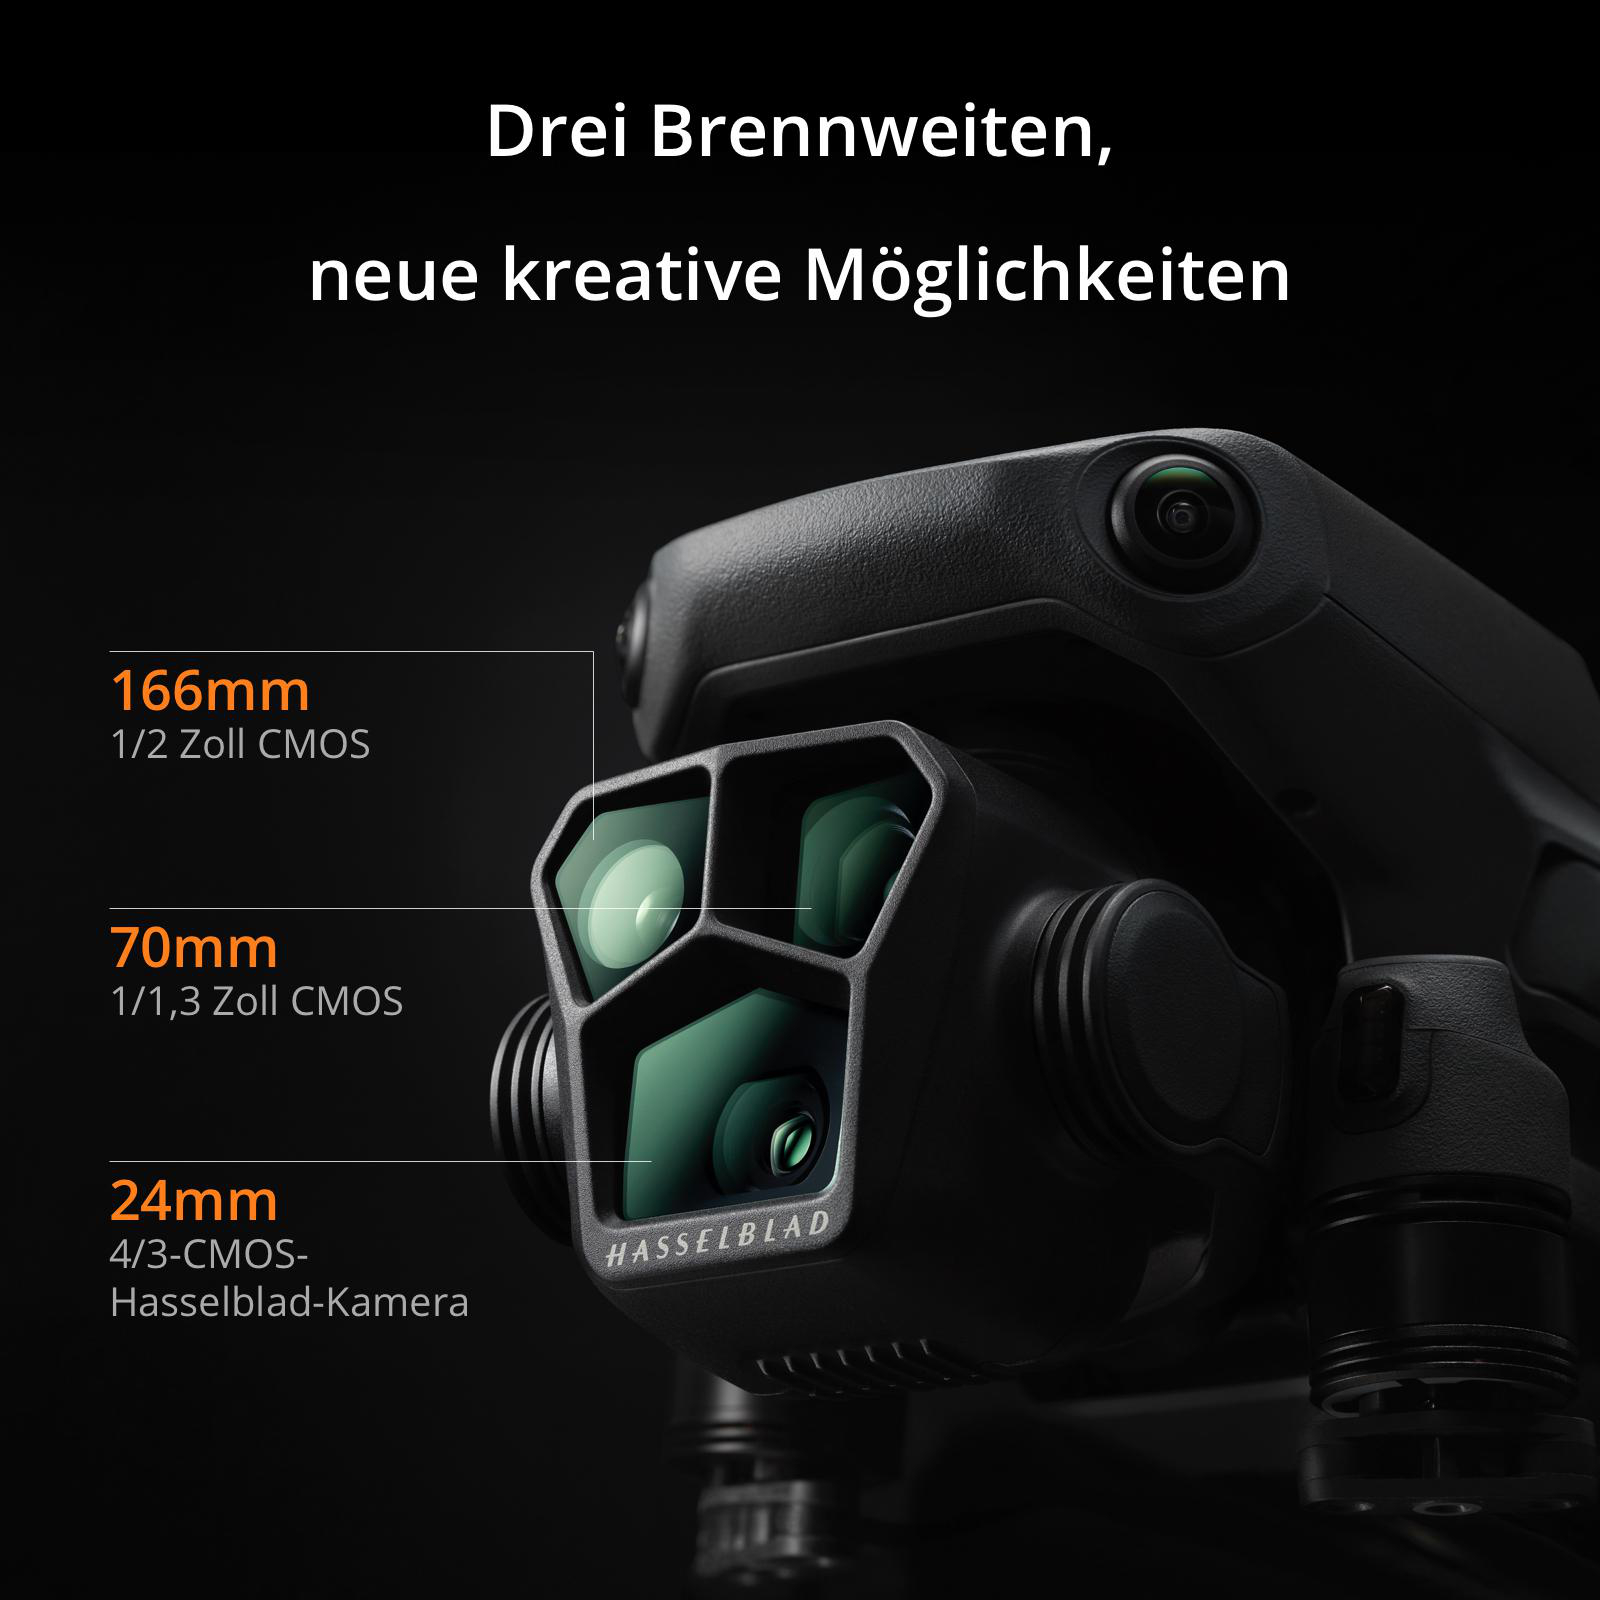 Pro Mavic (DJI RC) DJI Drohne, 3 Grau/Schwarz